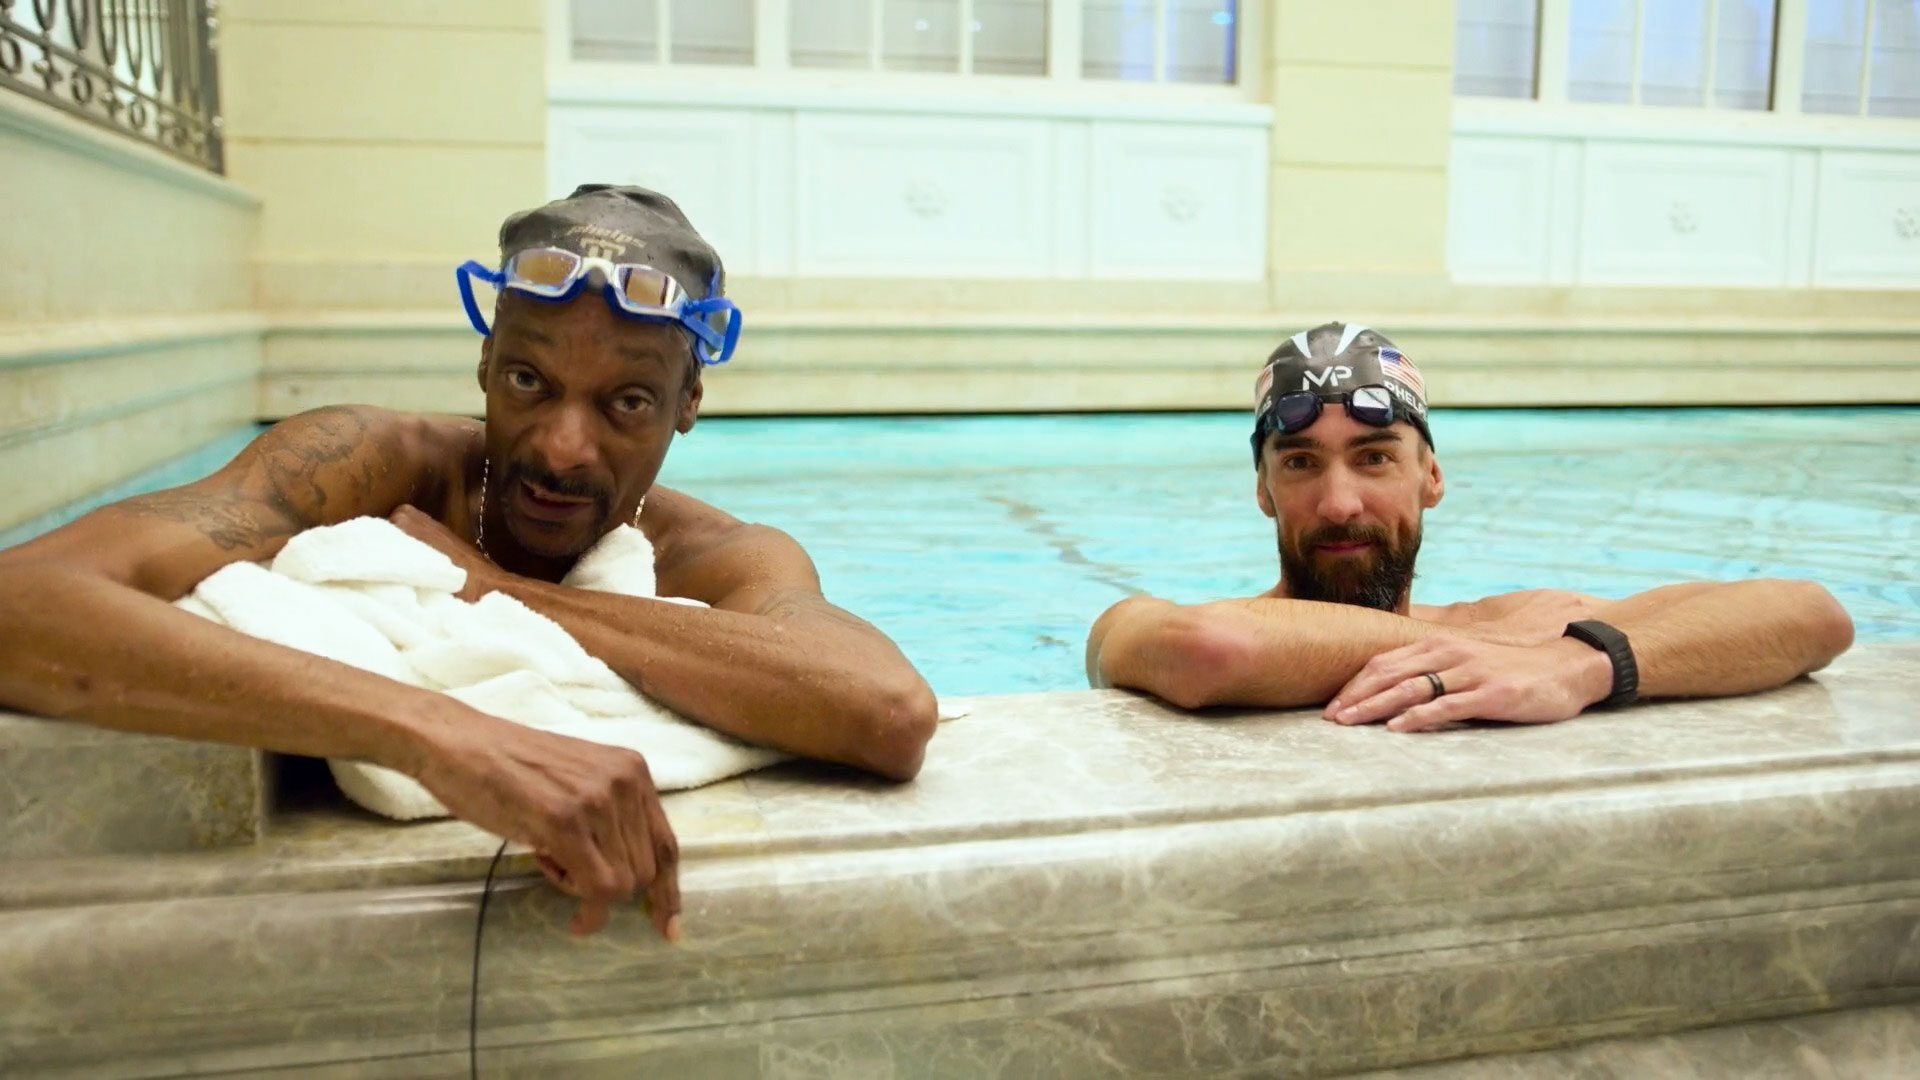 Snoop a même eu une leçon de natation avec Michael Phelps